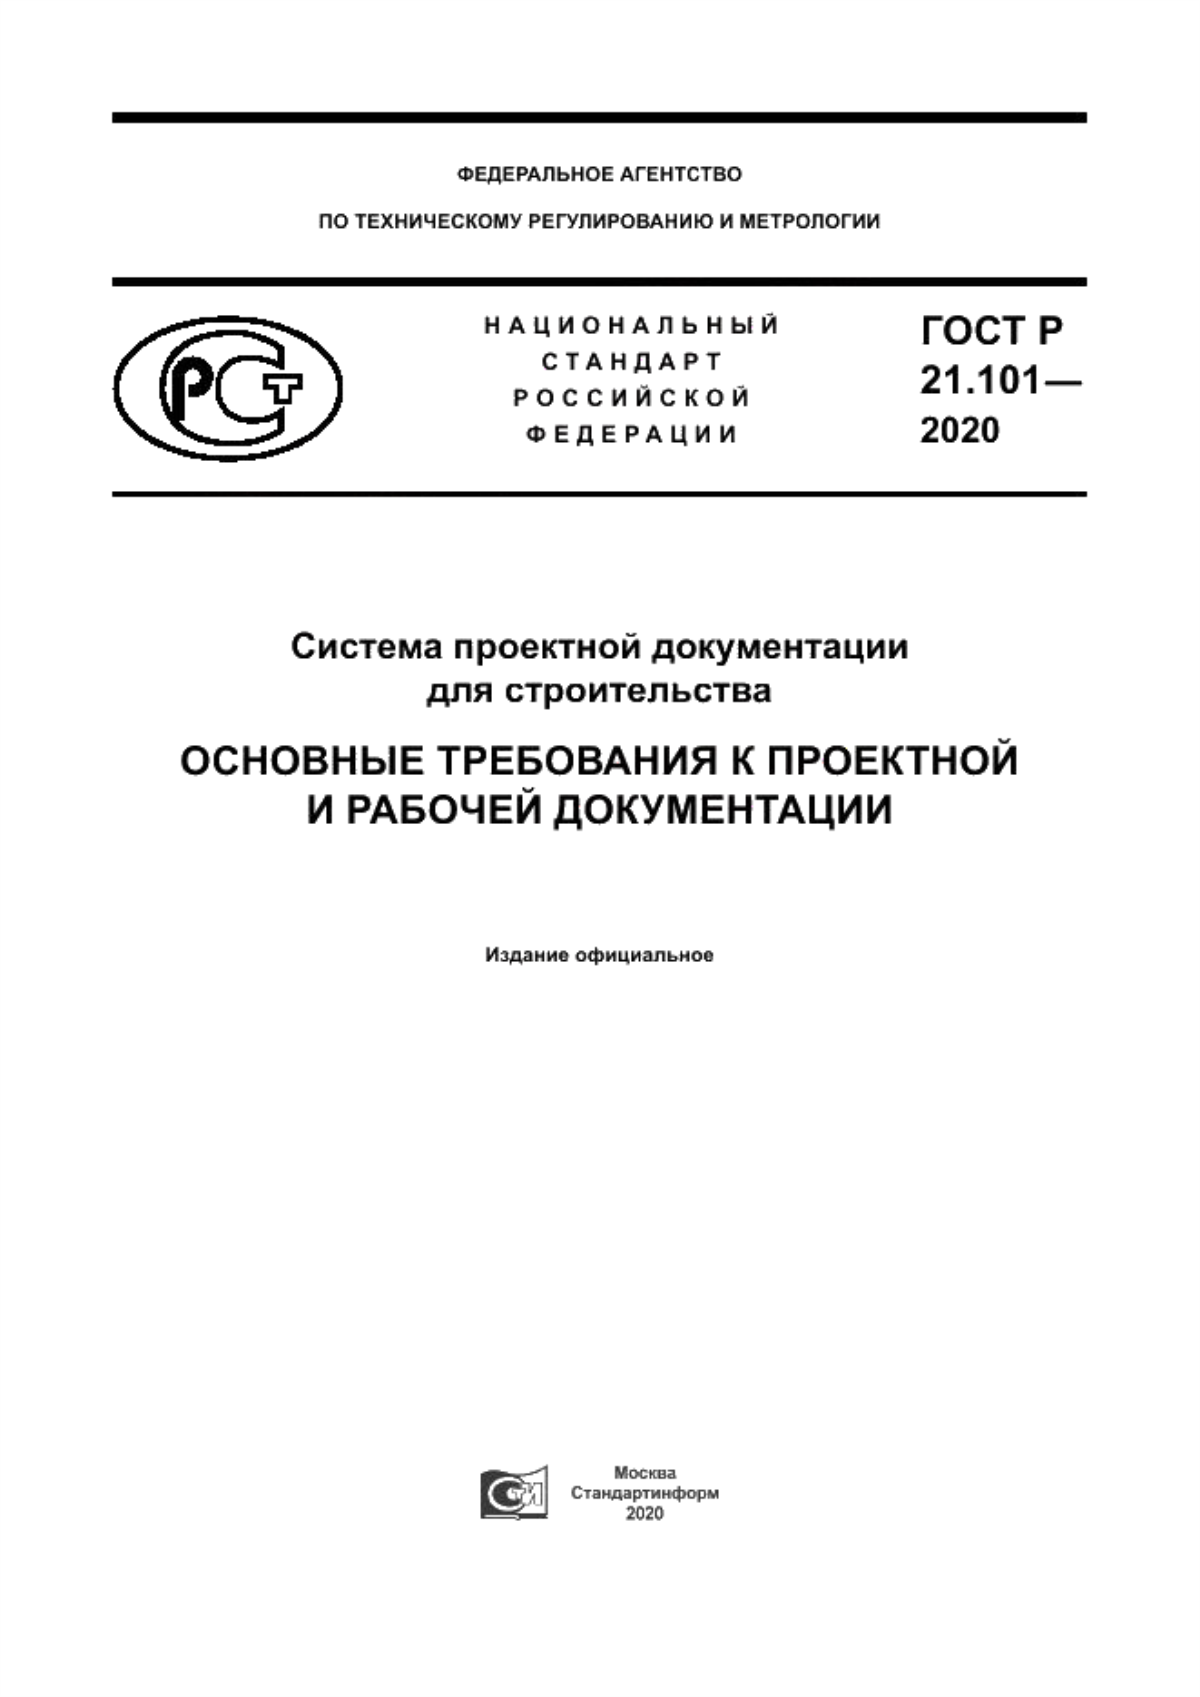 ГОСТ Р 21.101-2020 Система проектной документации для строительства. Основные требования к проектной и рабочей документации